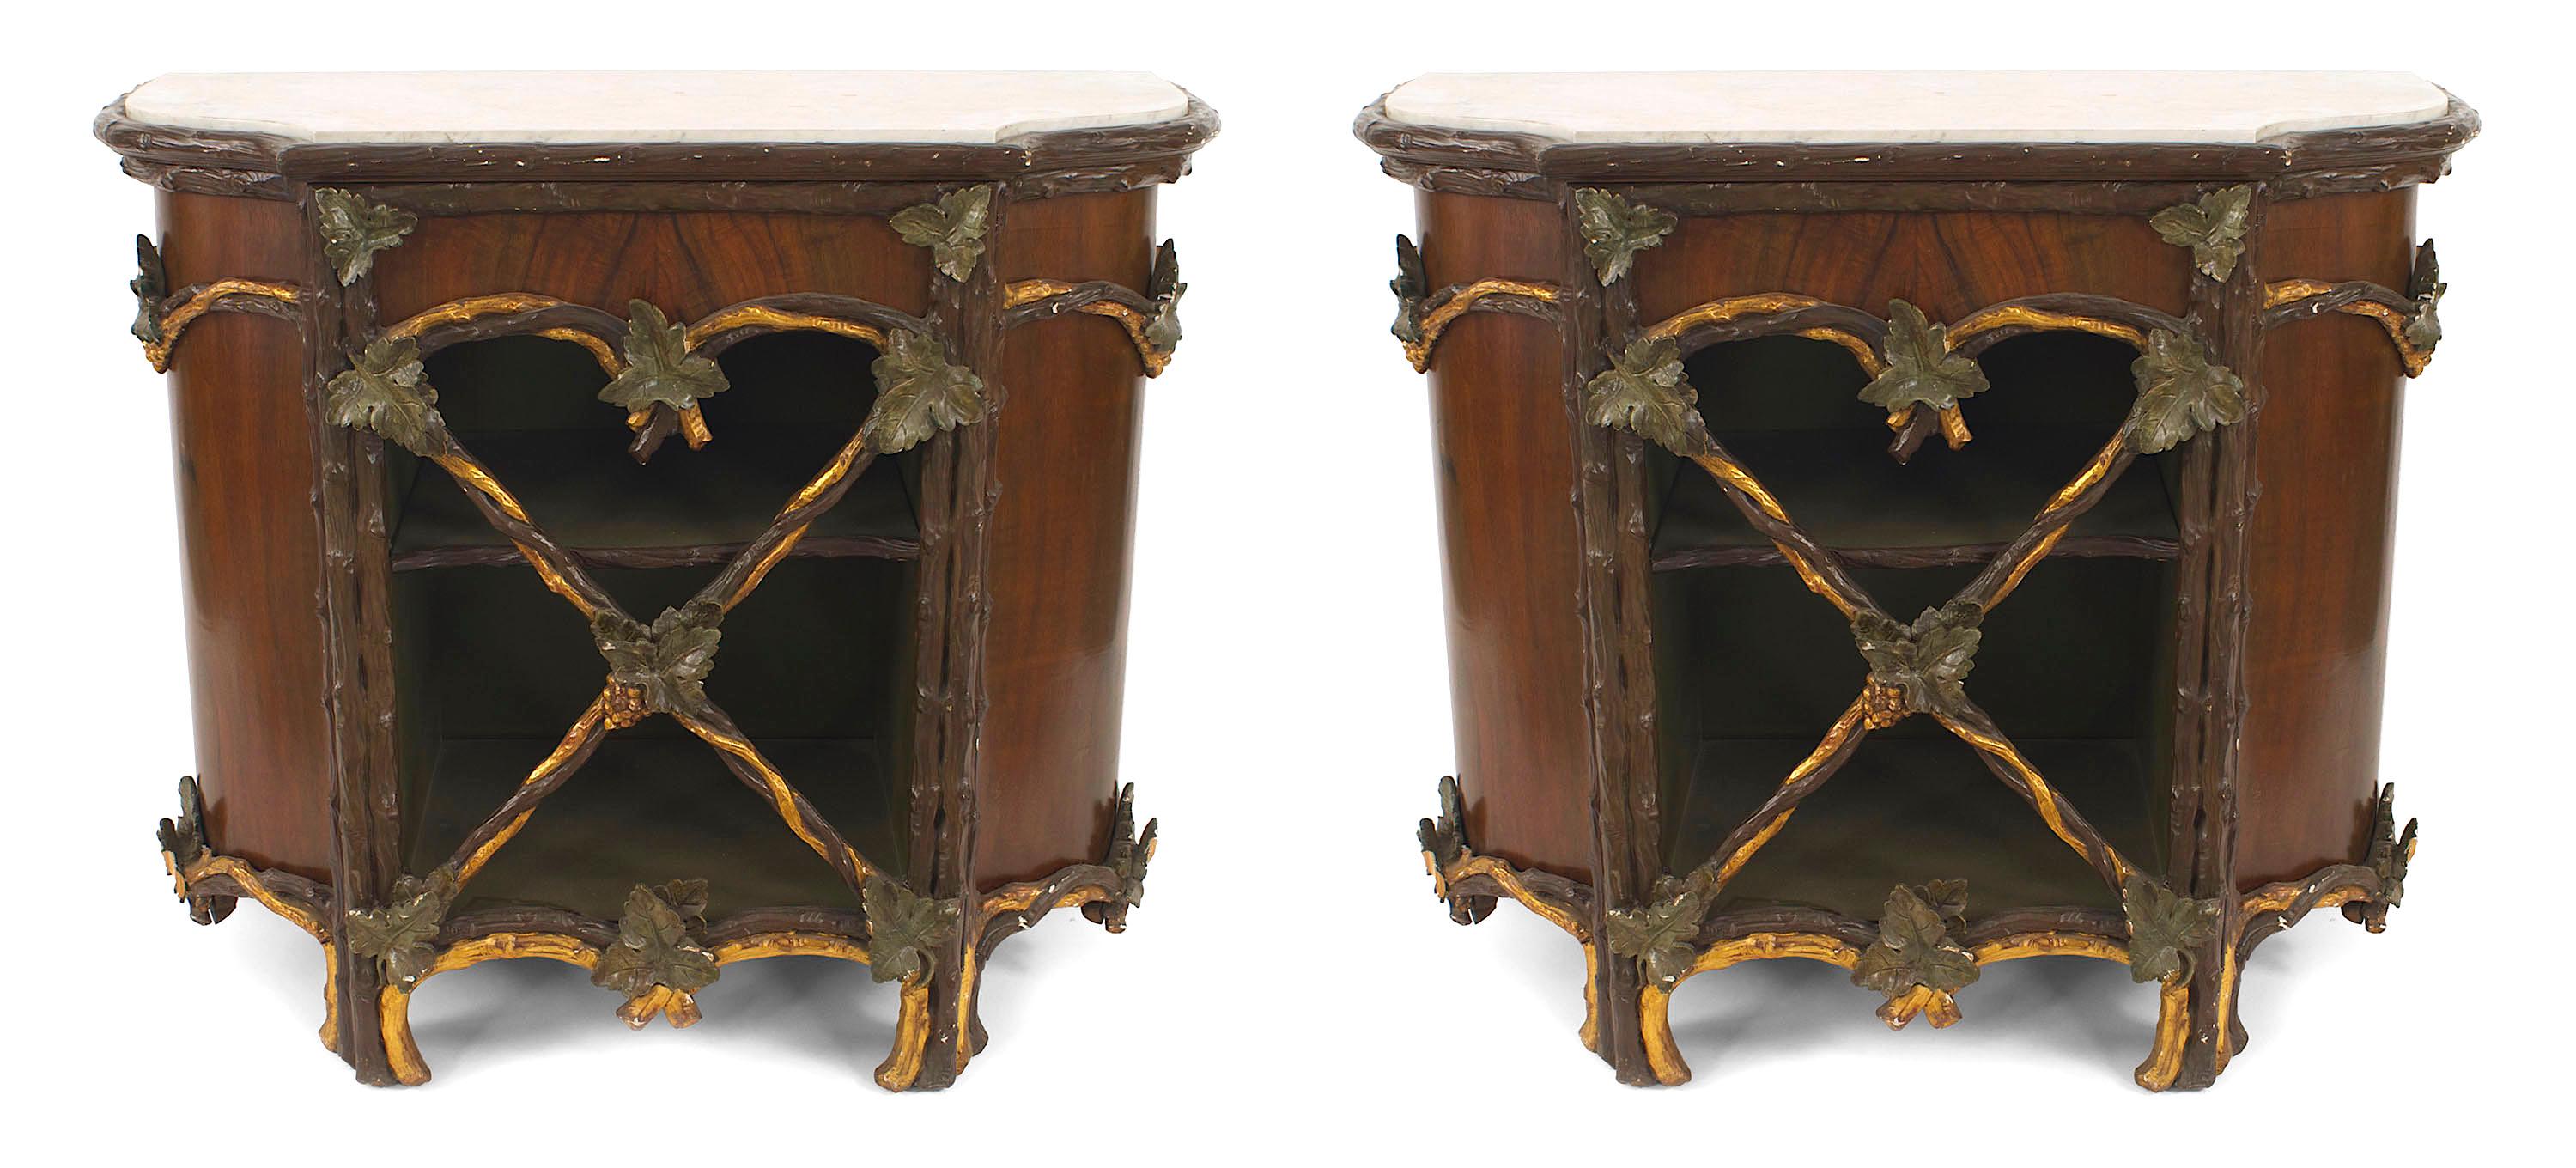 Ein Paar rustikale, kontinentale Kommoden (19. Jahrhundert), bemalt und vergoldet, mit geschnitztem Blattmuster auf der Vordertür und geformter weißer Marmorplatte. (Zugehöriger Artikel: 056123) (PREIS ALS PAAR).
